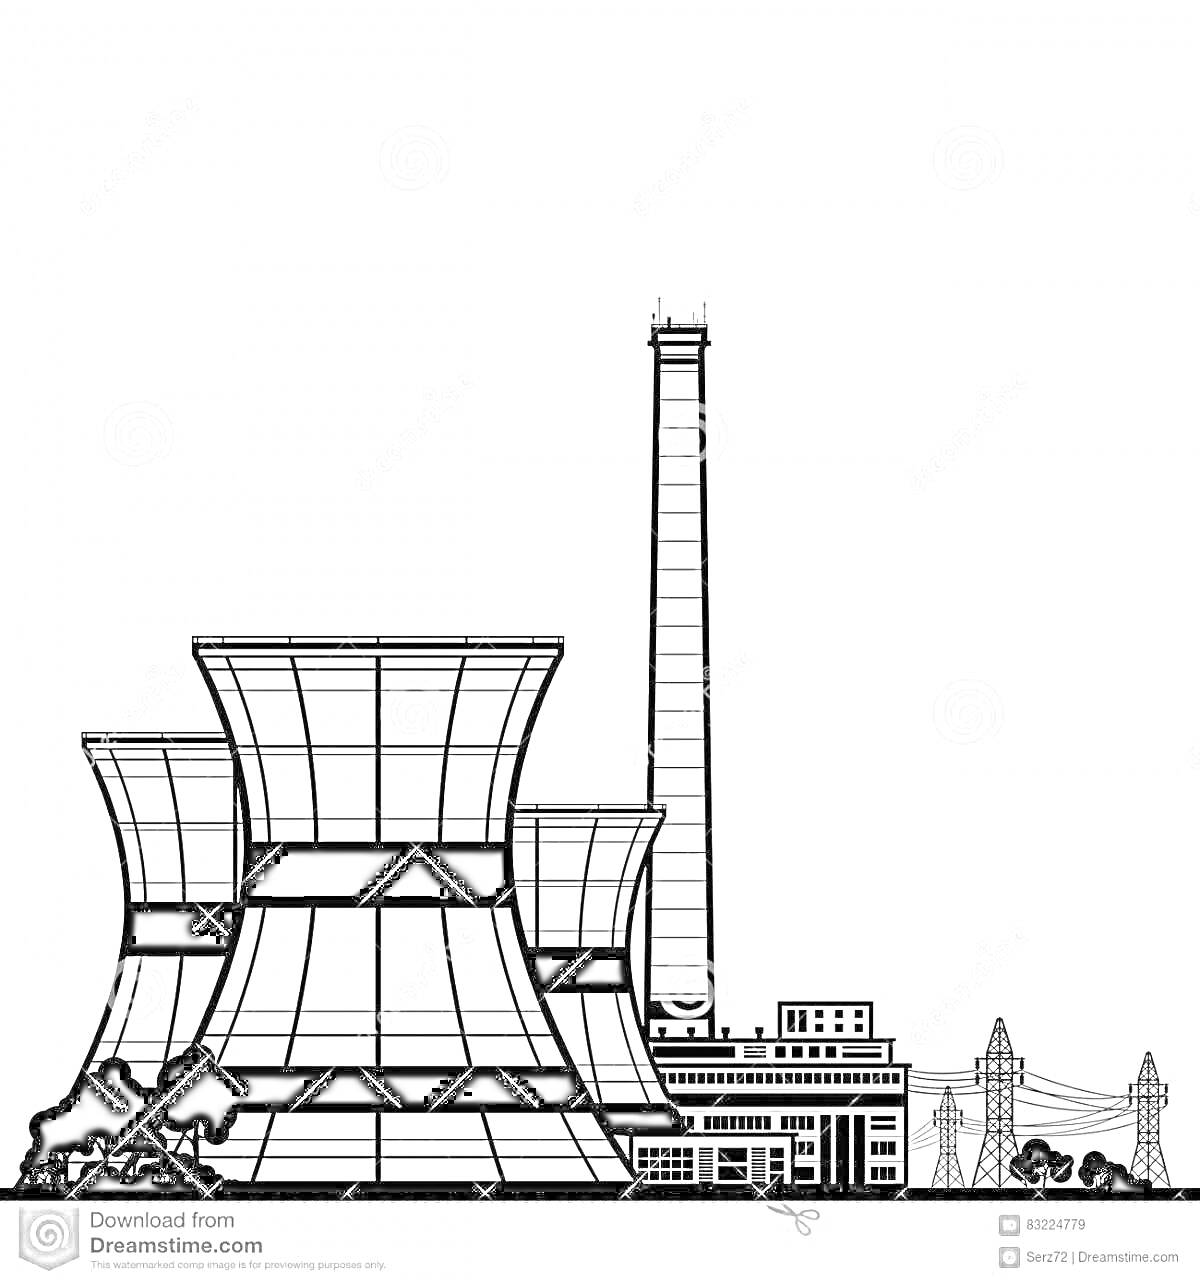 Раскраска АЭС с градирнями, дымовой трубой, зданием и линиями электропередачи